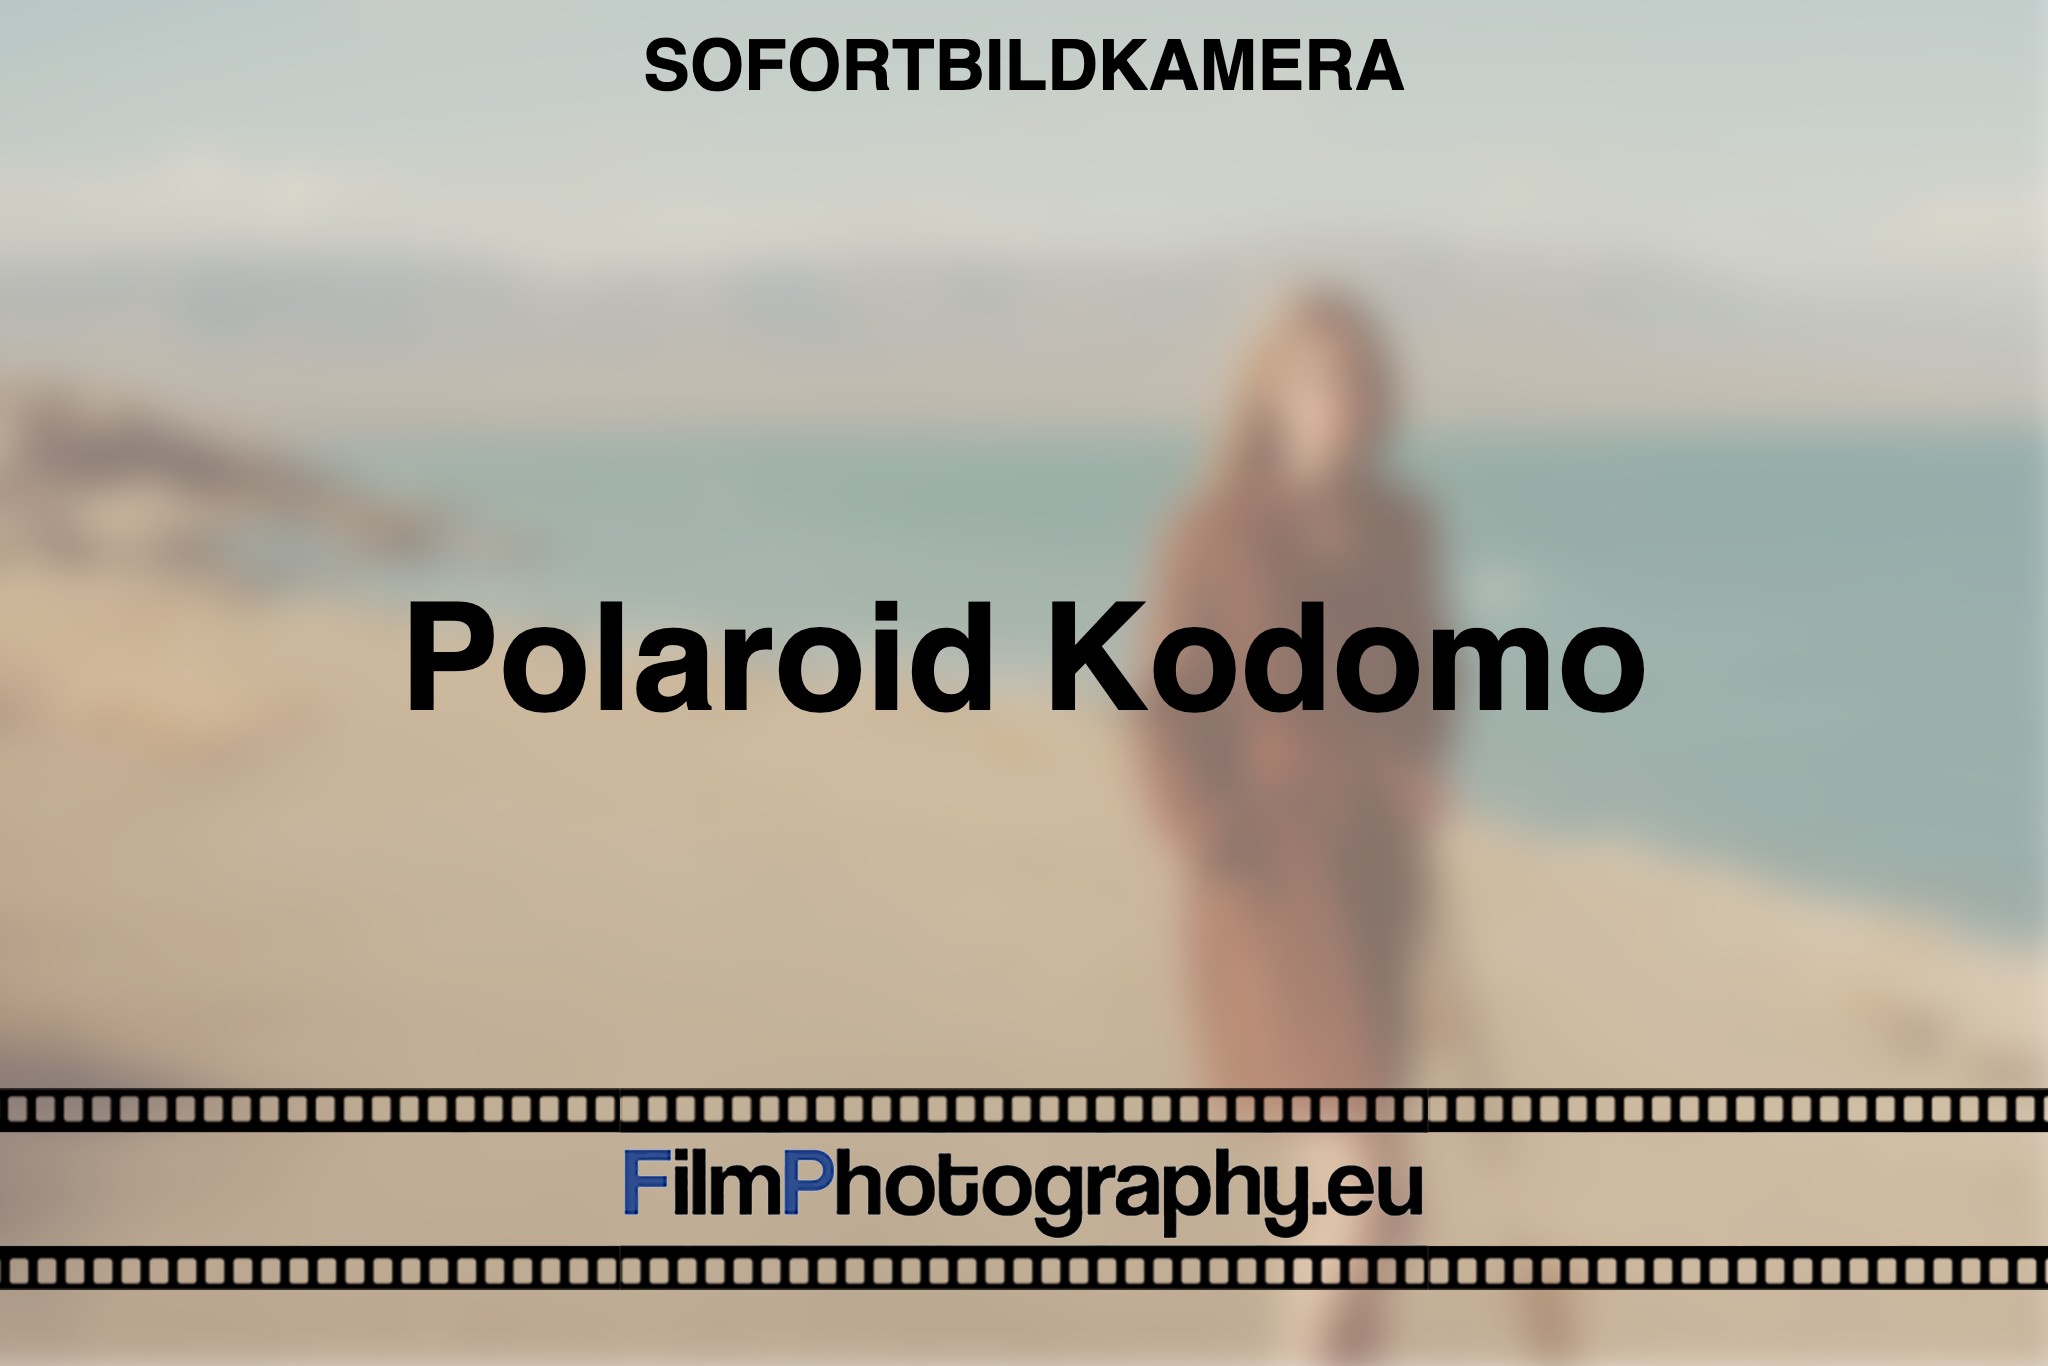 polaroid-kodomo-sofortbildkamera-bnv